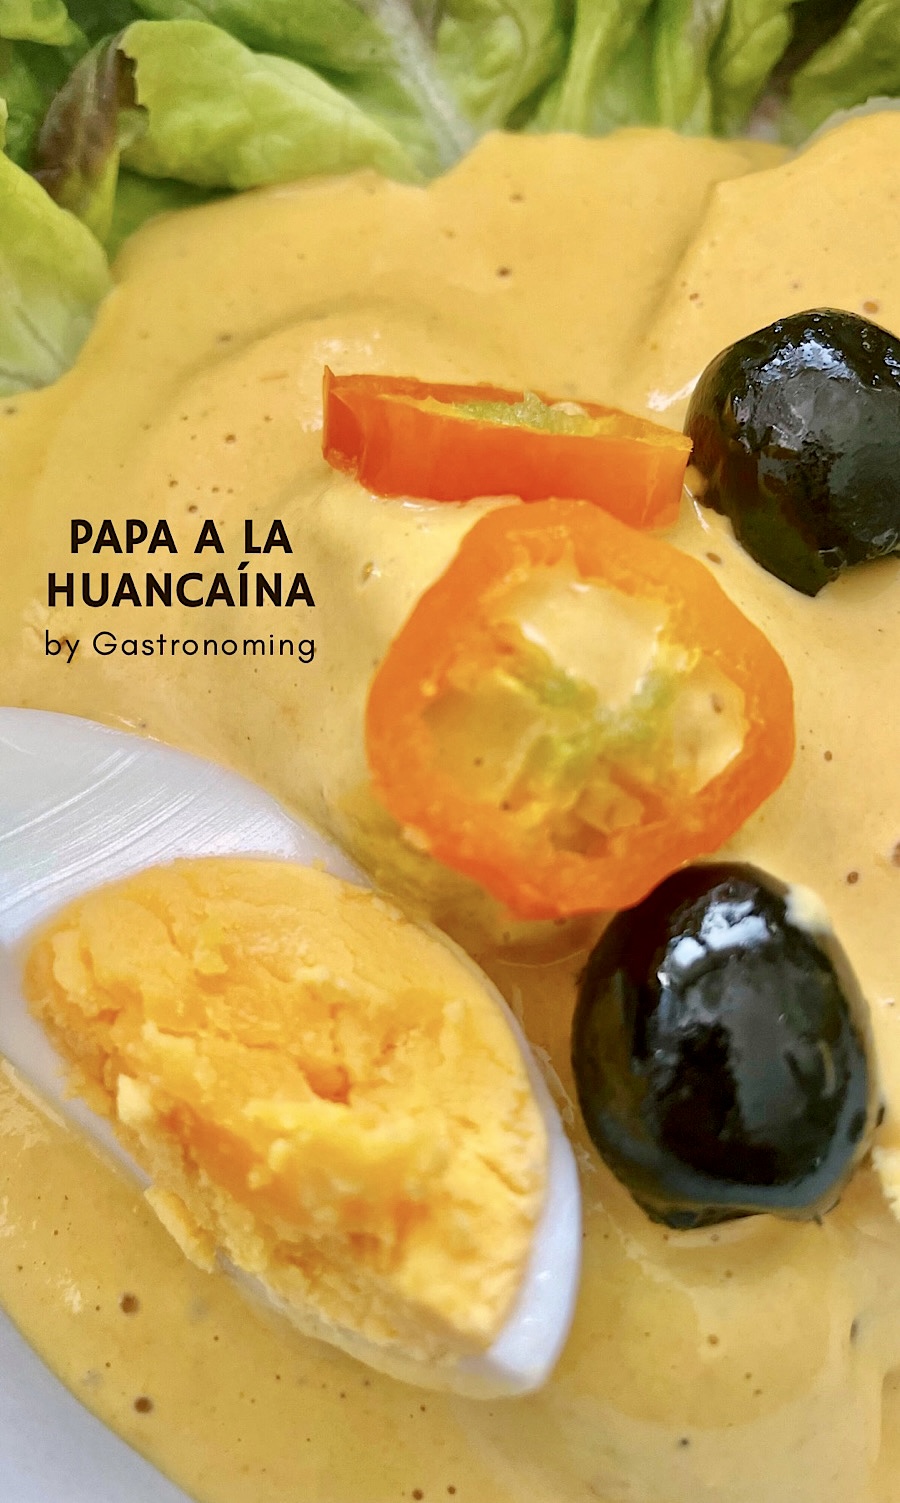 Papa a la huancaína, las “patatas bravas” andinas